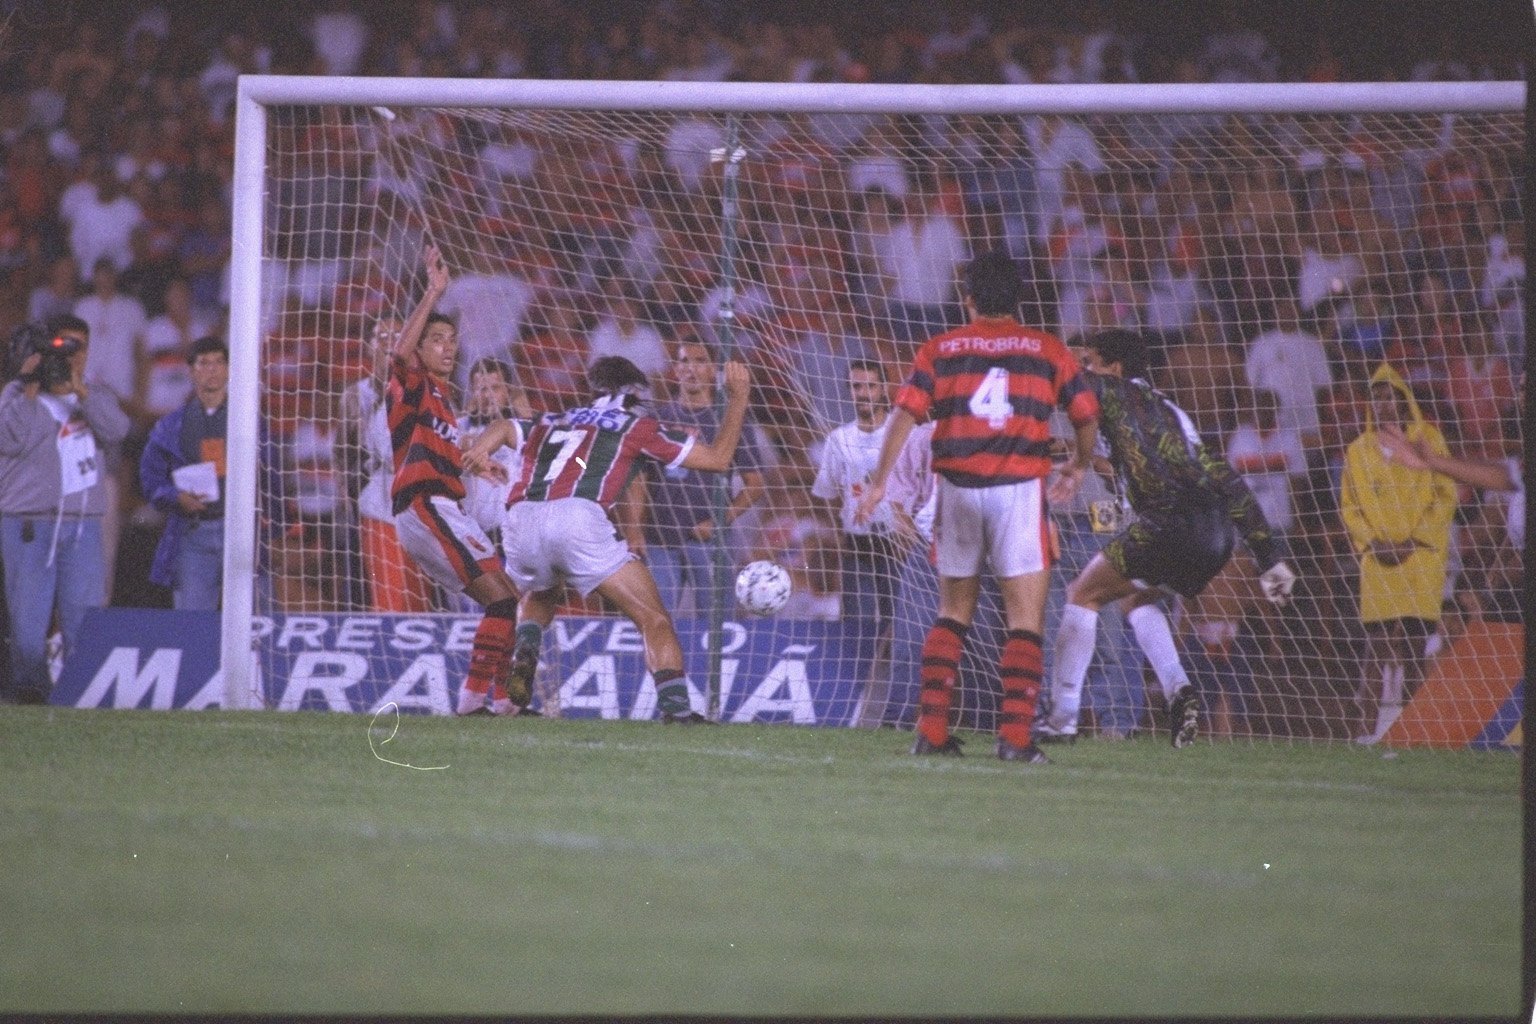 Um dos jogos mais épicos da história do Fluminense foi a decisão de 1995. Tecnicamente não foi uma final, já que era a última rodada de um octagonal aquele 25 de junho, finalizando os 169 jogos disputados naquela edição do Estadual. Com mais de 100 mil pessoas no Maracanã e muita chuva no primeiro tempo, o Fla tinha a vantagem do empate. Renato Gaúcho abriu o placar para o Flu aos 30 minutos do 1º tempo, e Leonardo ampliou aos 42. O Flamengo reagiu na segunda etapa e Romário fez seu primeiro gol contra o Tricolor aos 26, e seis minutos depois Fabinho igualou o placar. Na súmula, a “barrigada” de Renato, aos 41, foi anotada para Ailton Ferraz, atual treinador do Sub-23 do Flu.